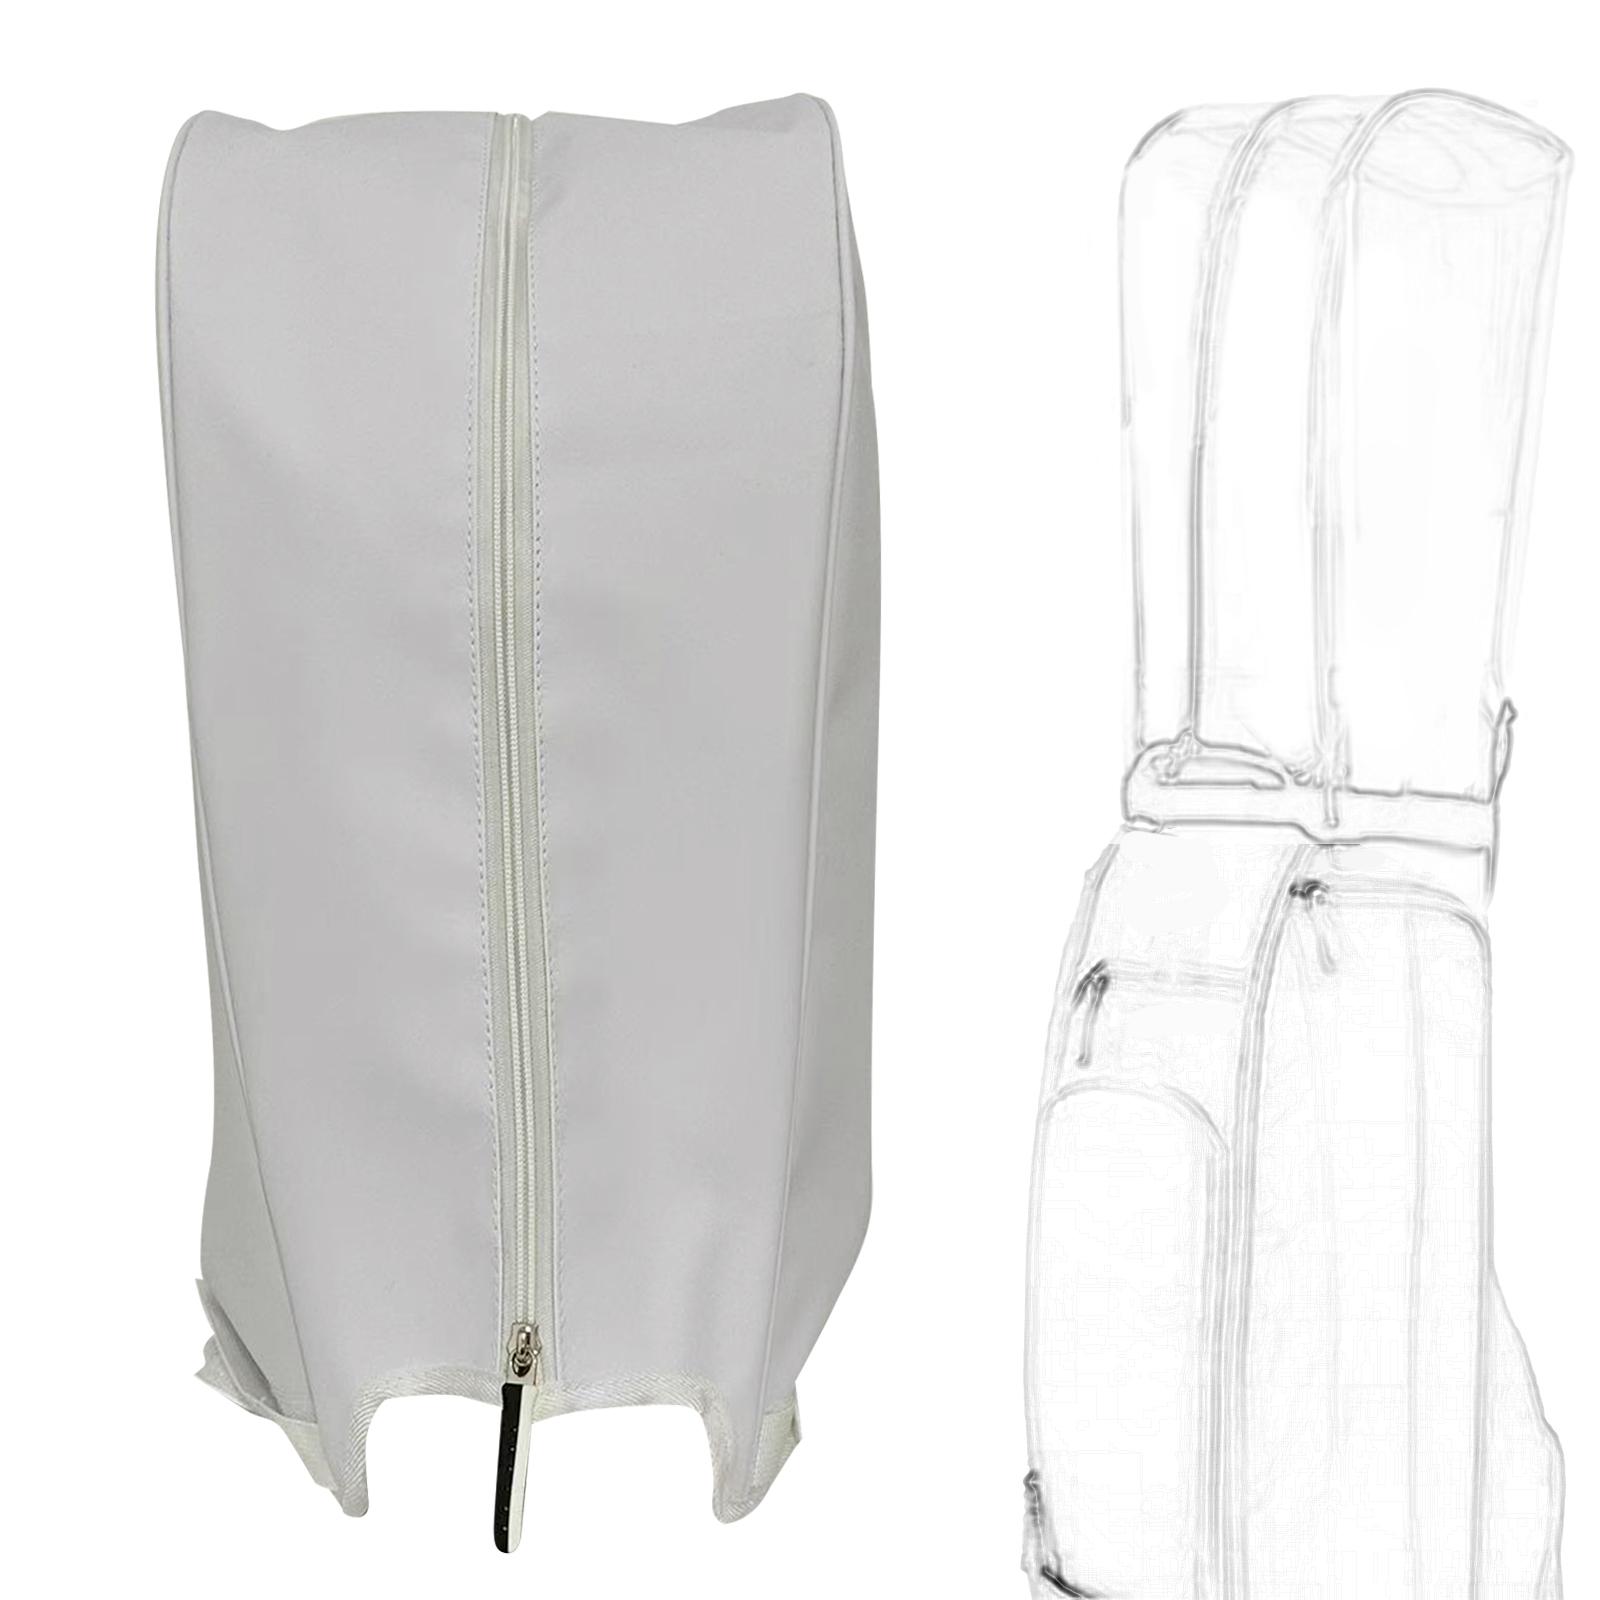 Golf Rain Cover Durable Club Bags Raincoat for Golf Bag Golf Push Carts Accs White A